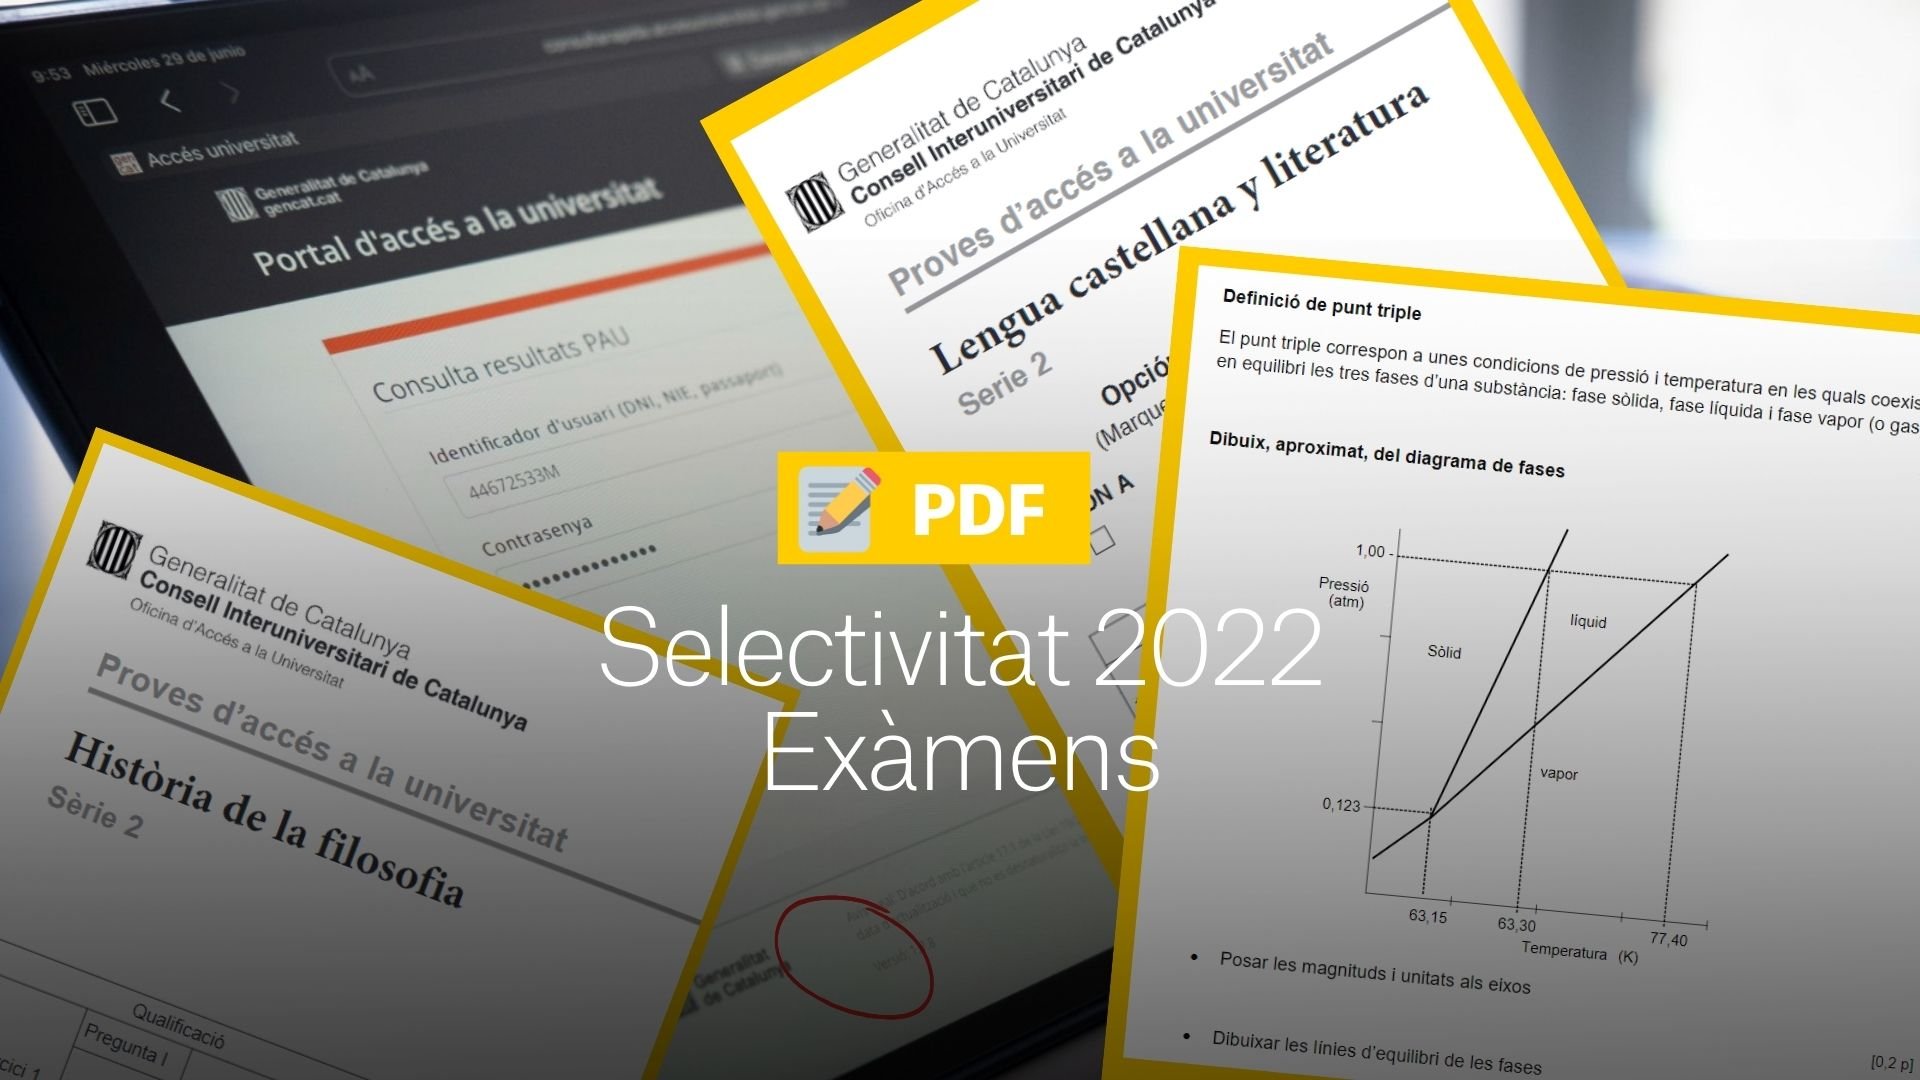 Exámenes Selectividad 2022 en PDF: Correcciones, respuestas y soluciones